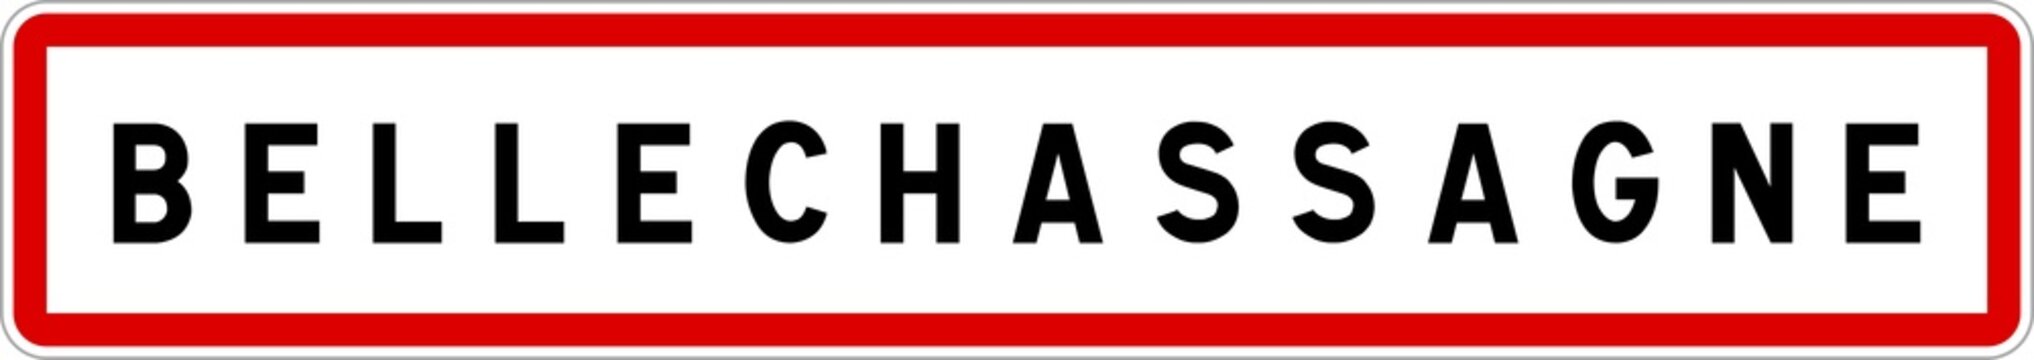 Panneau entrée ville agglomération Bellechassagne / Town entrance sign Bellechassagne